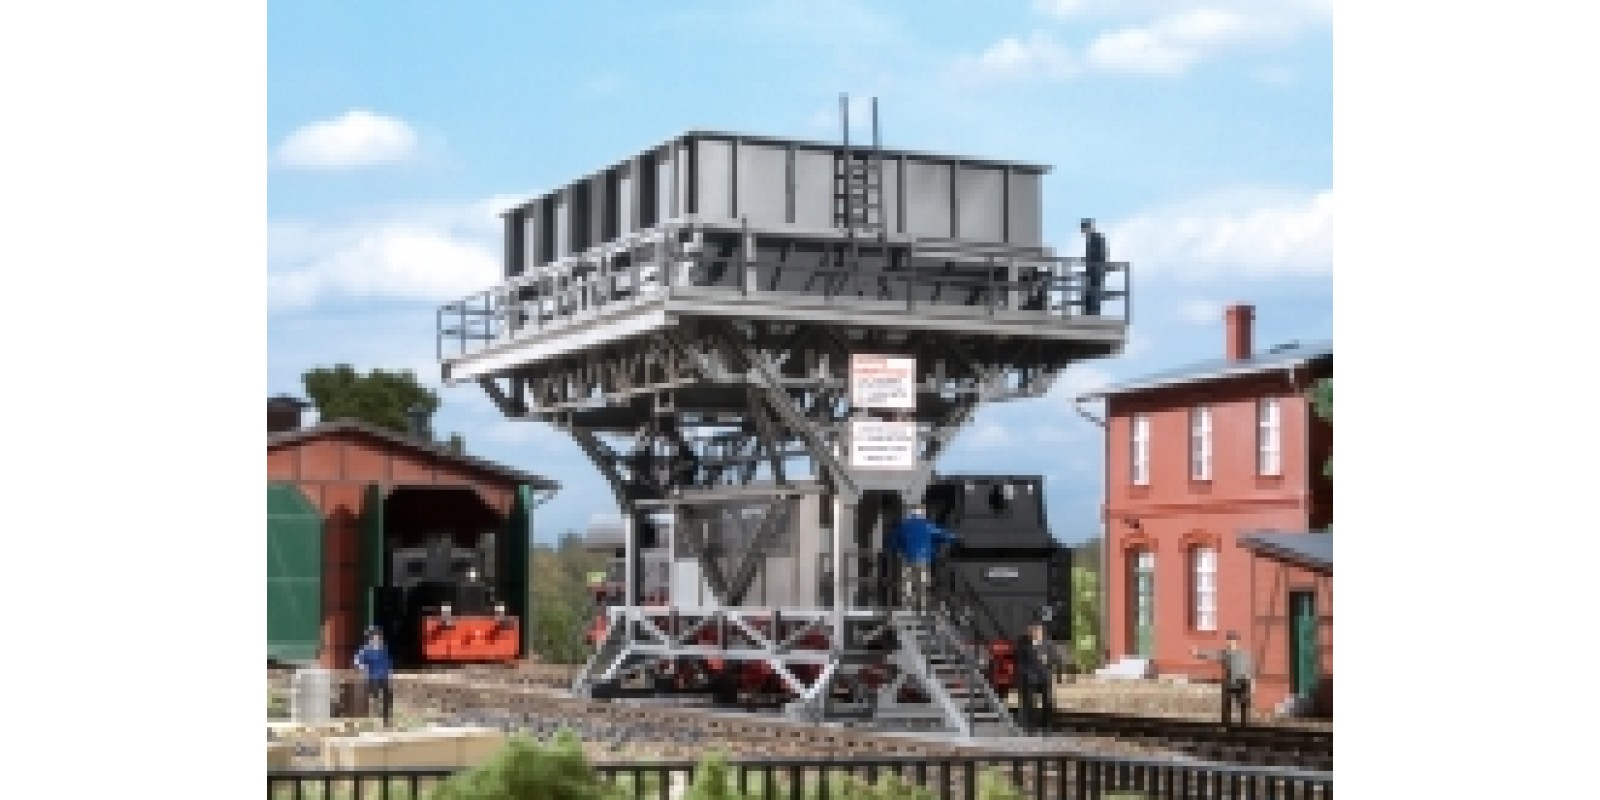 AU11416 Large coaling station